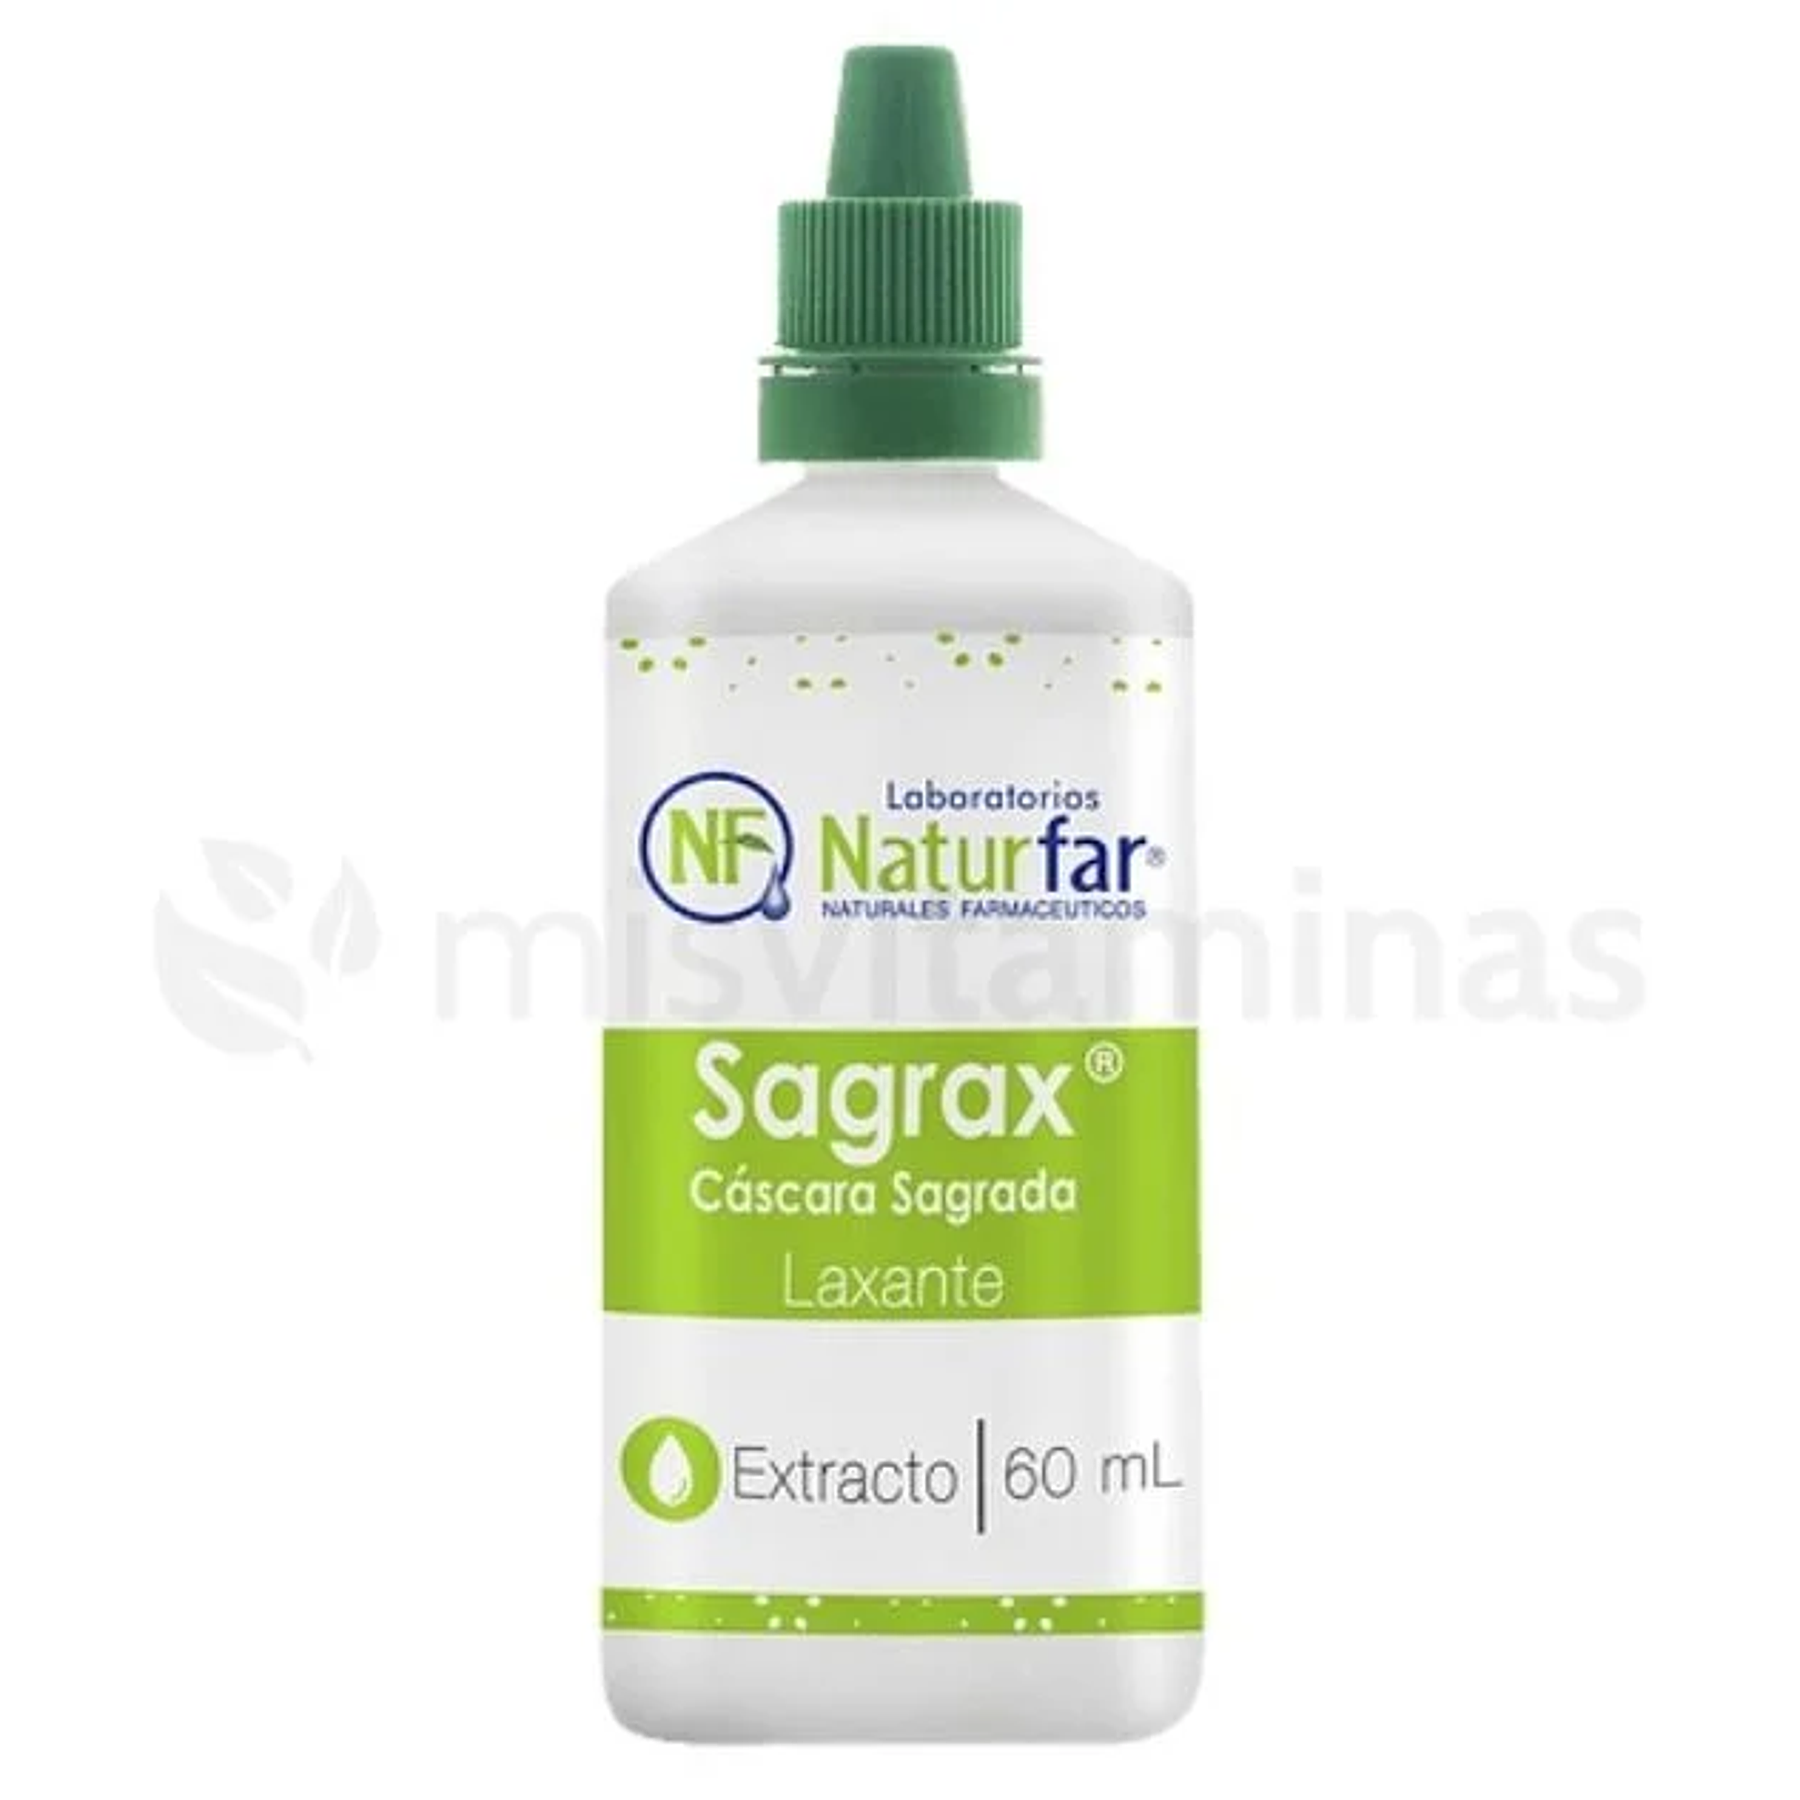 Sagrax Cascara Sagrada 60 ml Naturfar Gotas